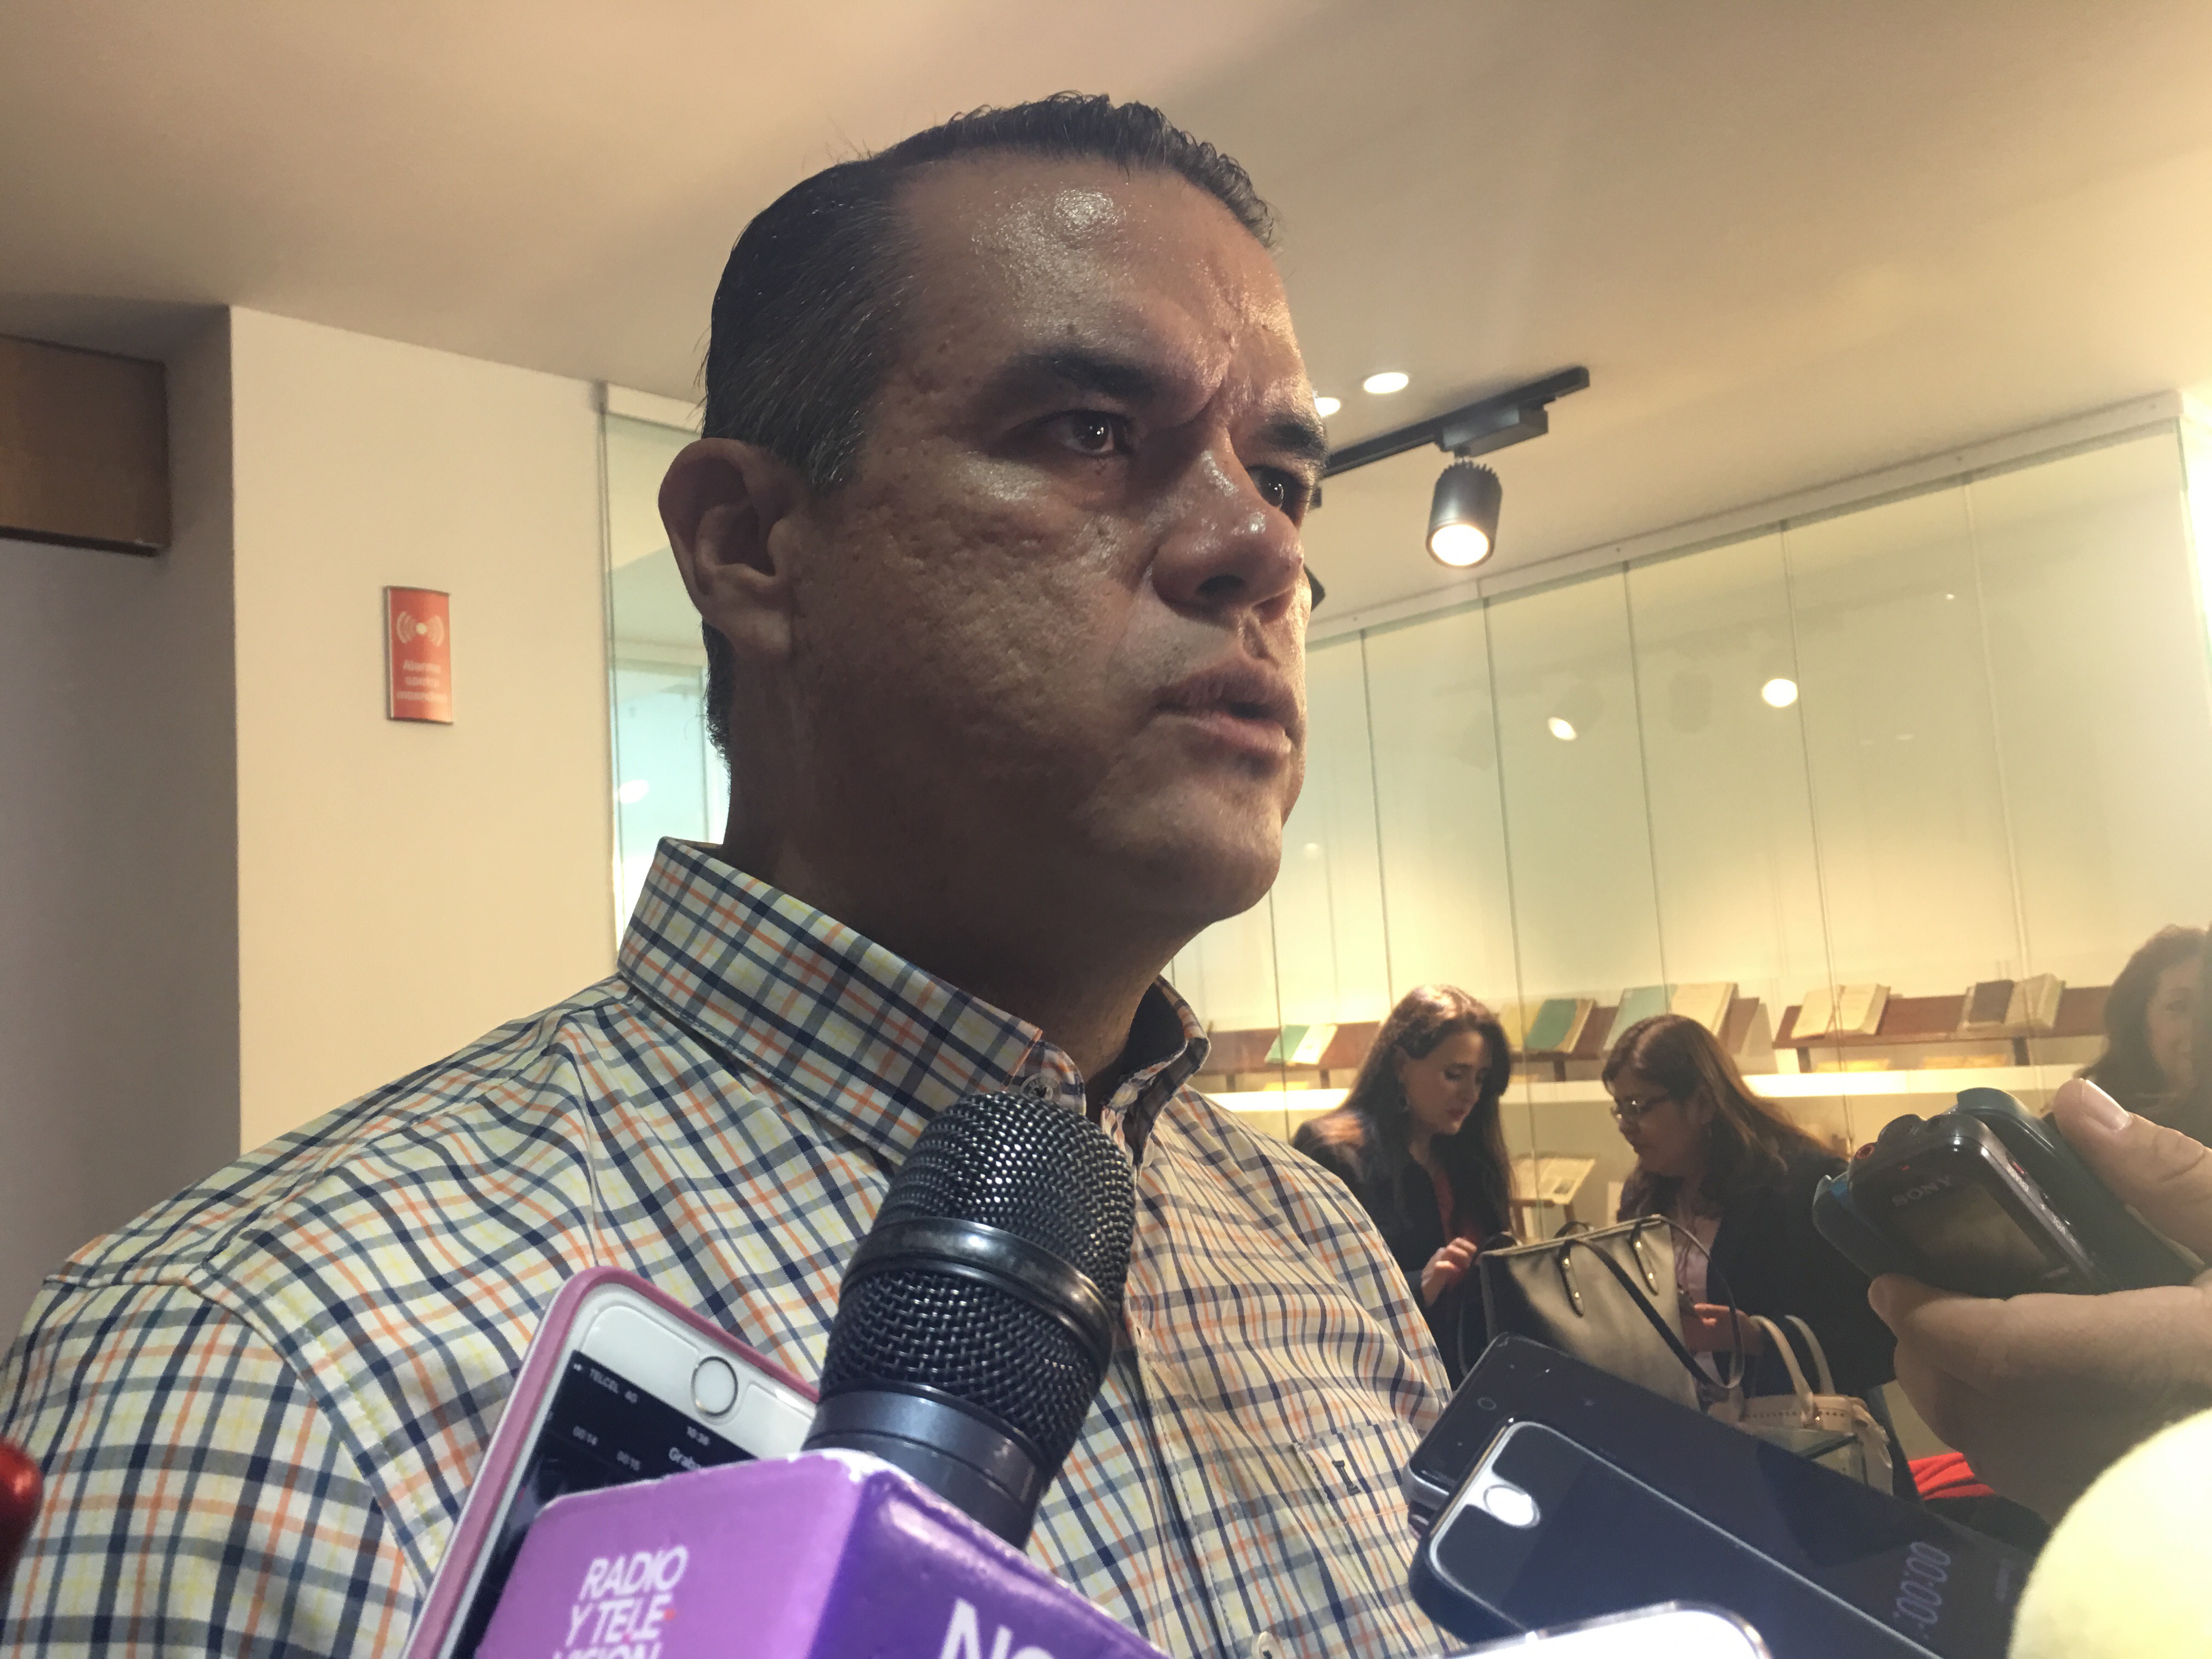  Diputado Mauricio Ruiz presenta iniciativa para que cuidado de hijos entre en pensión alimenticia